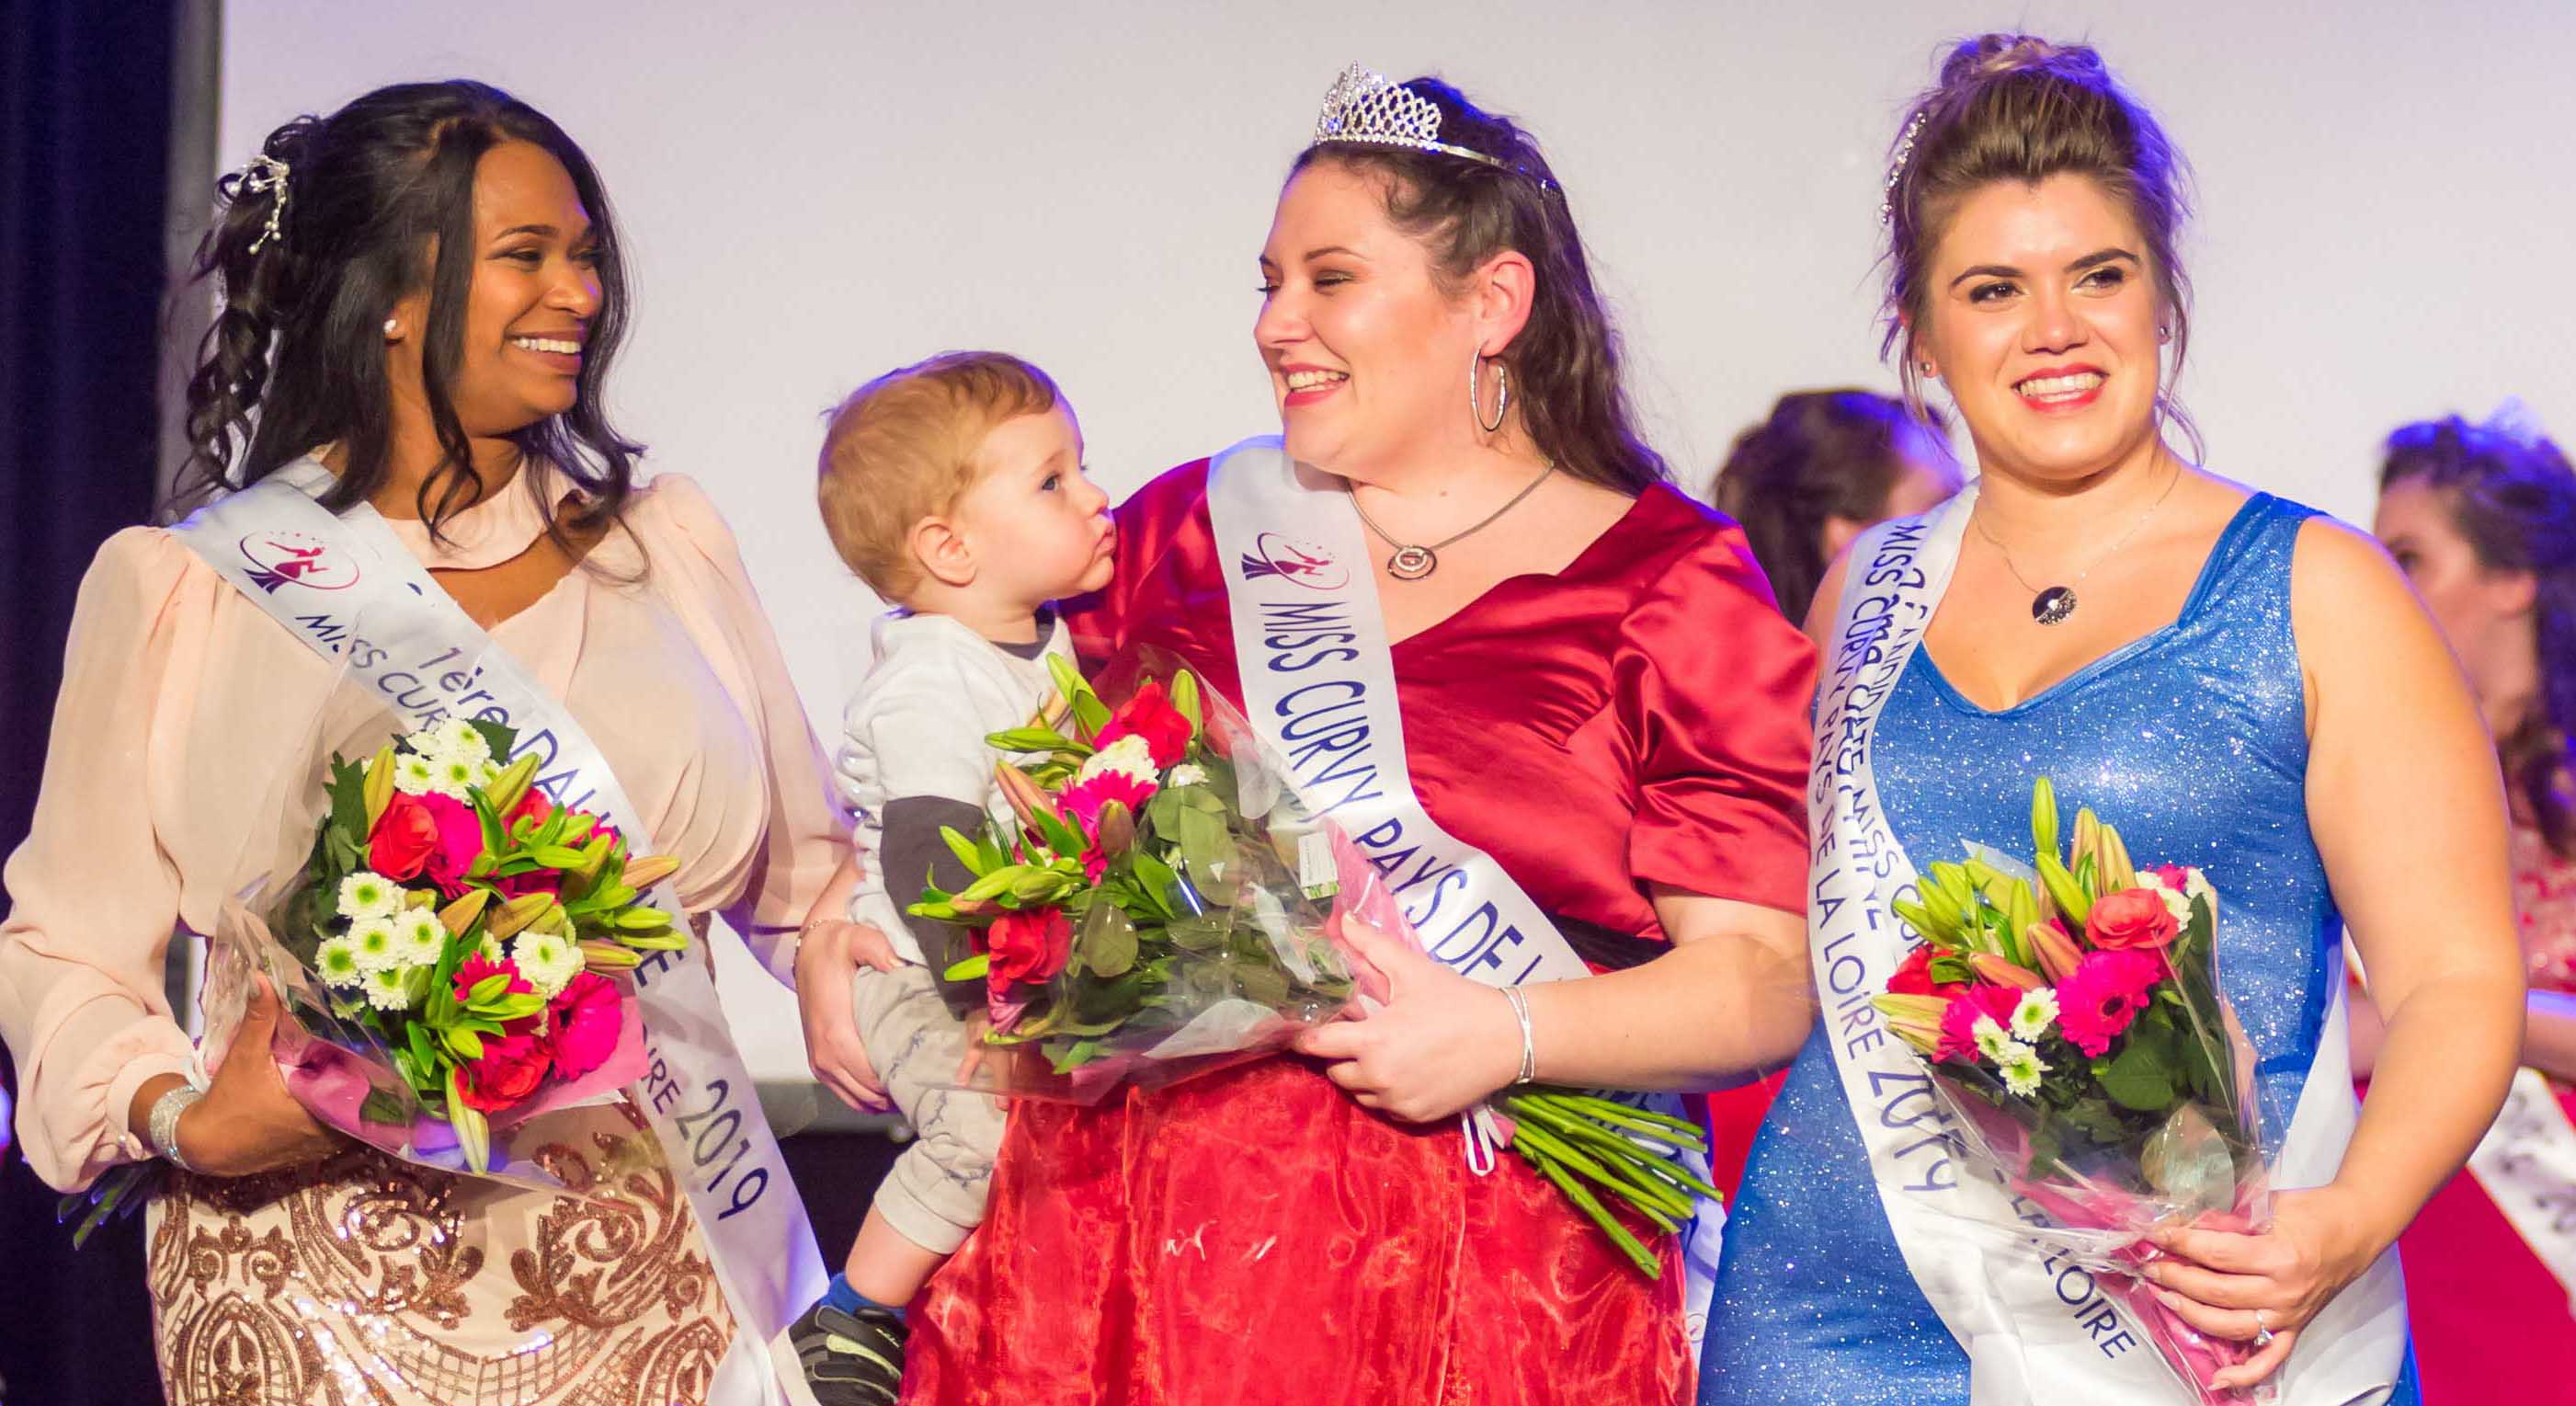 Pour la beauté des courbes. Rencontre avec Sophie Cochez Miss Curvy Pays de la Loire 2019. Une maman vise le titre de Miss Curvy France.